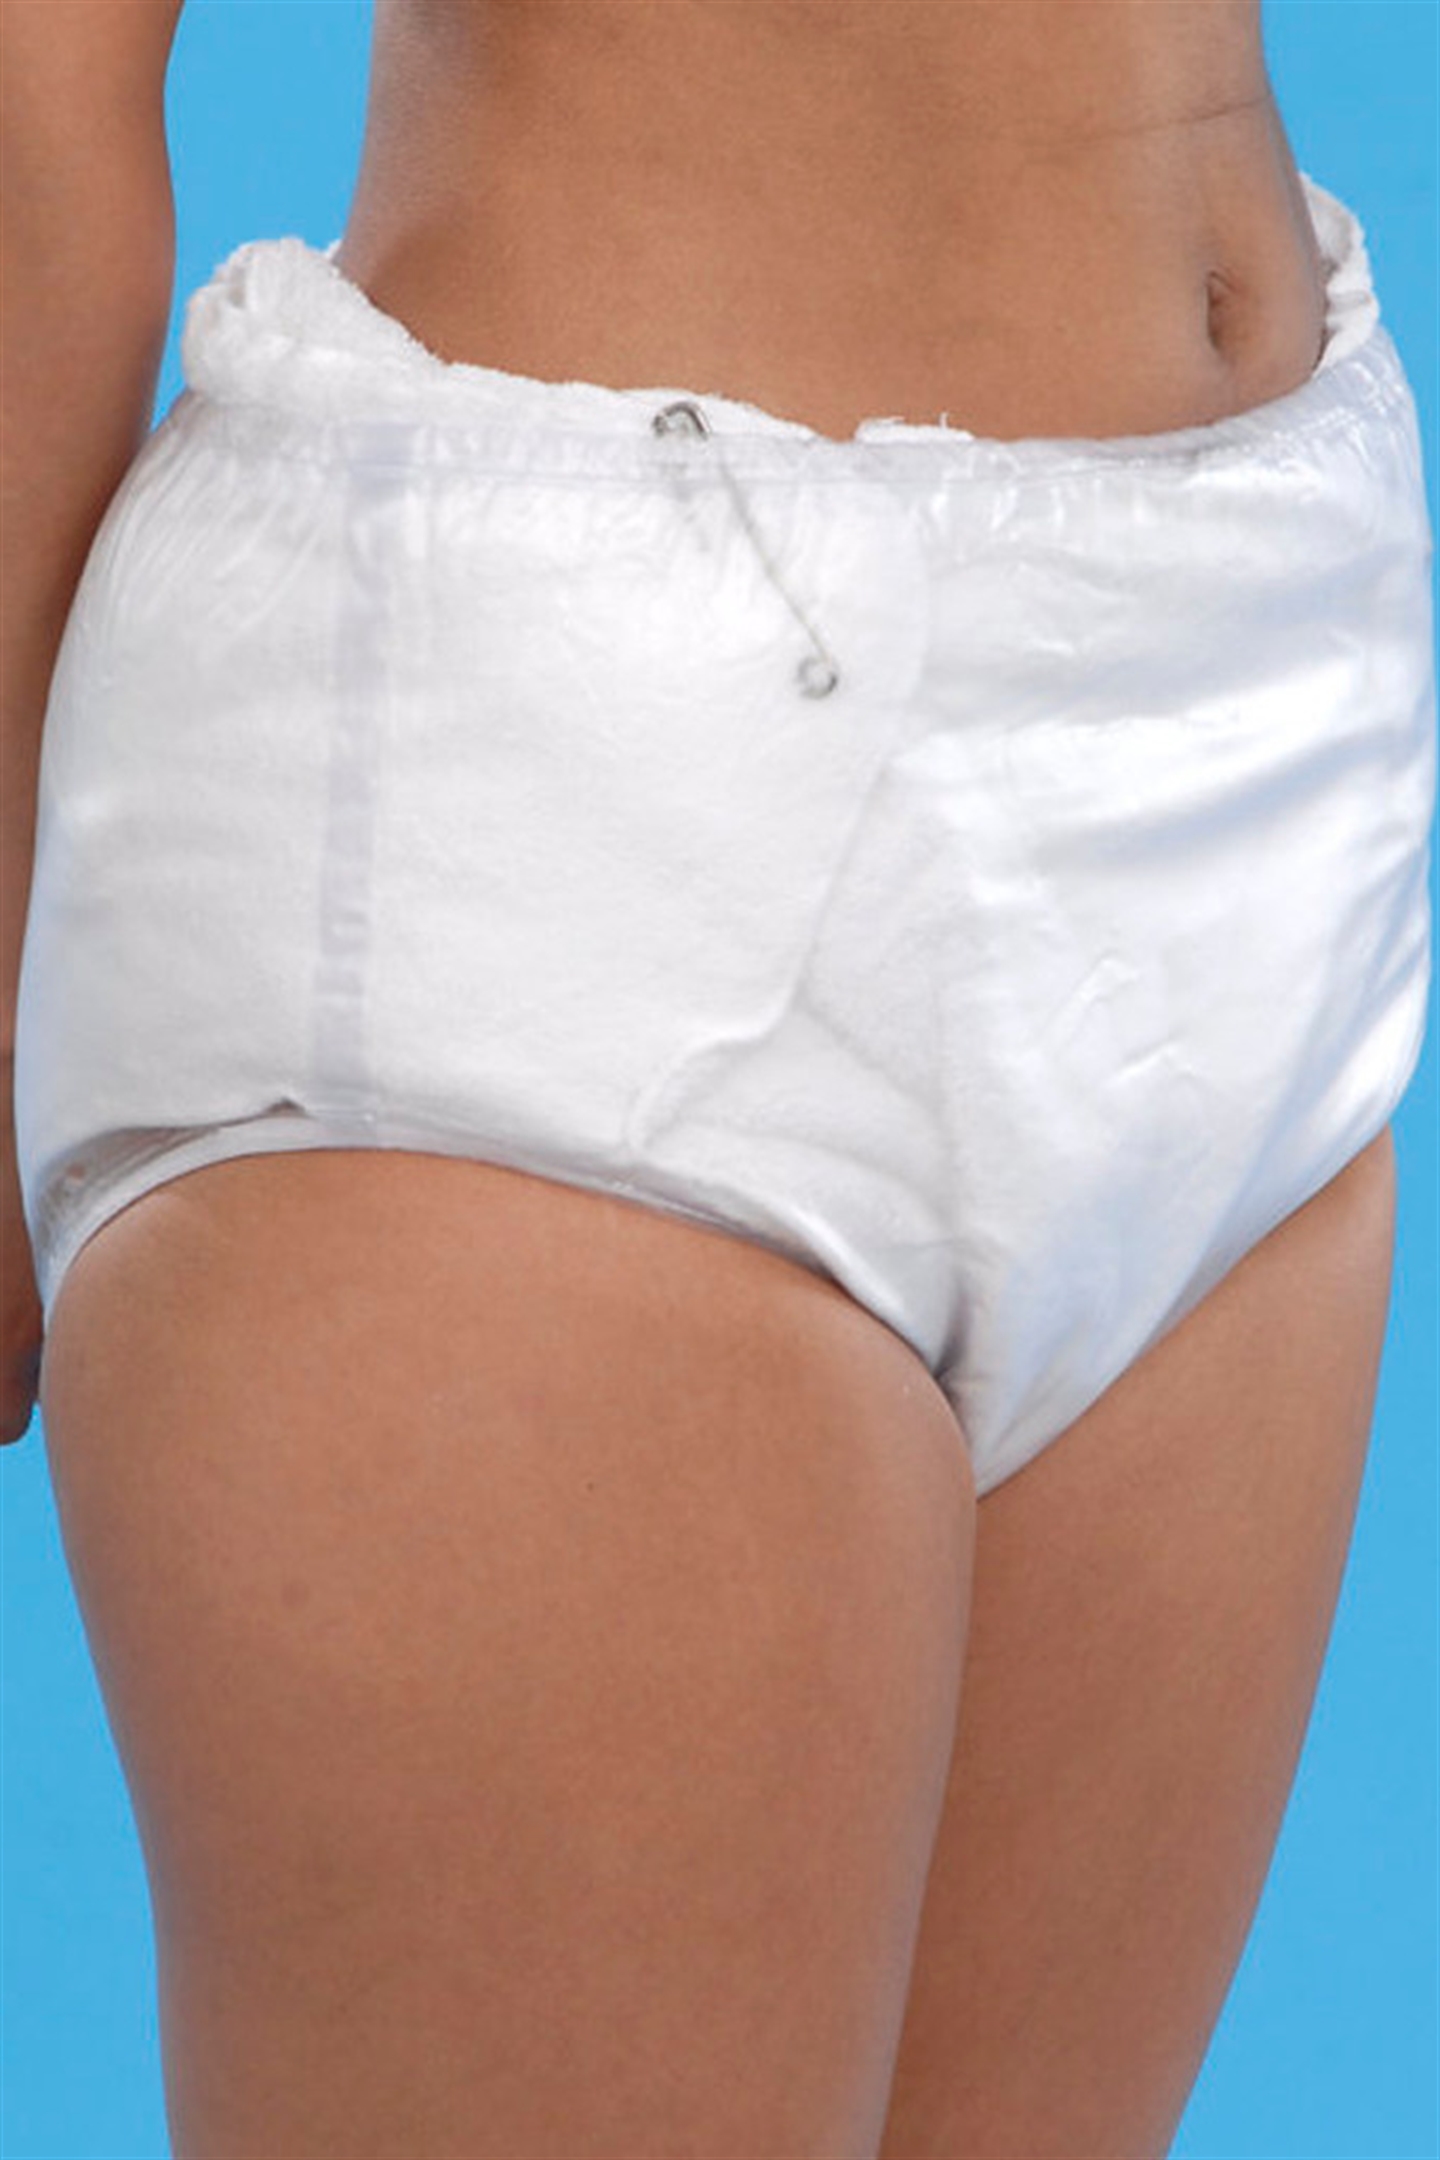 Washable pad & waterproof pants